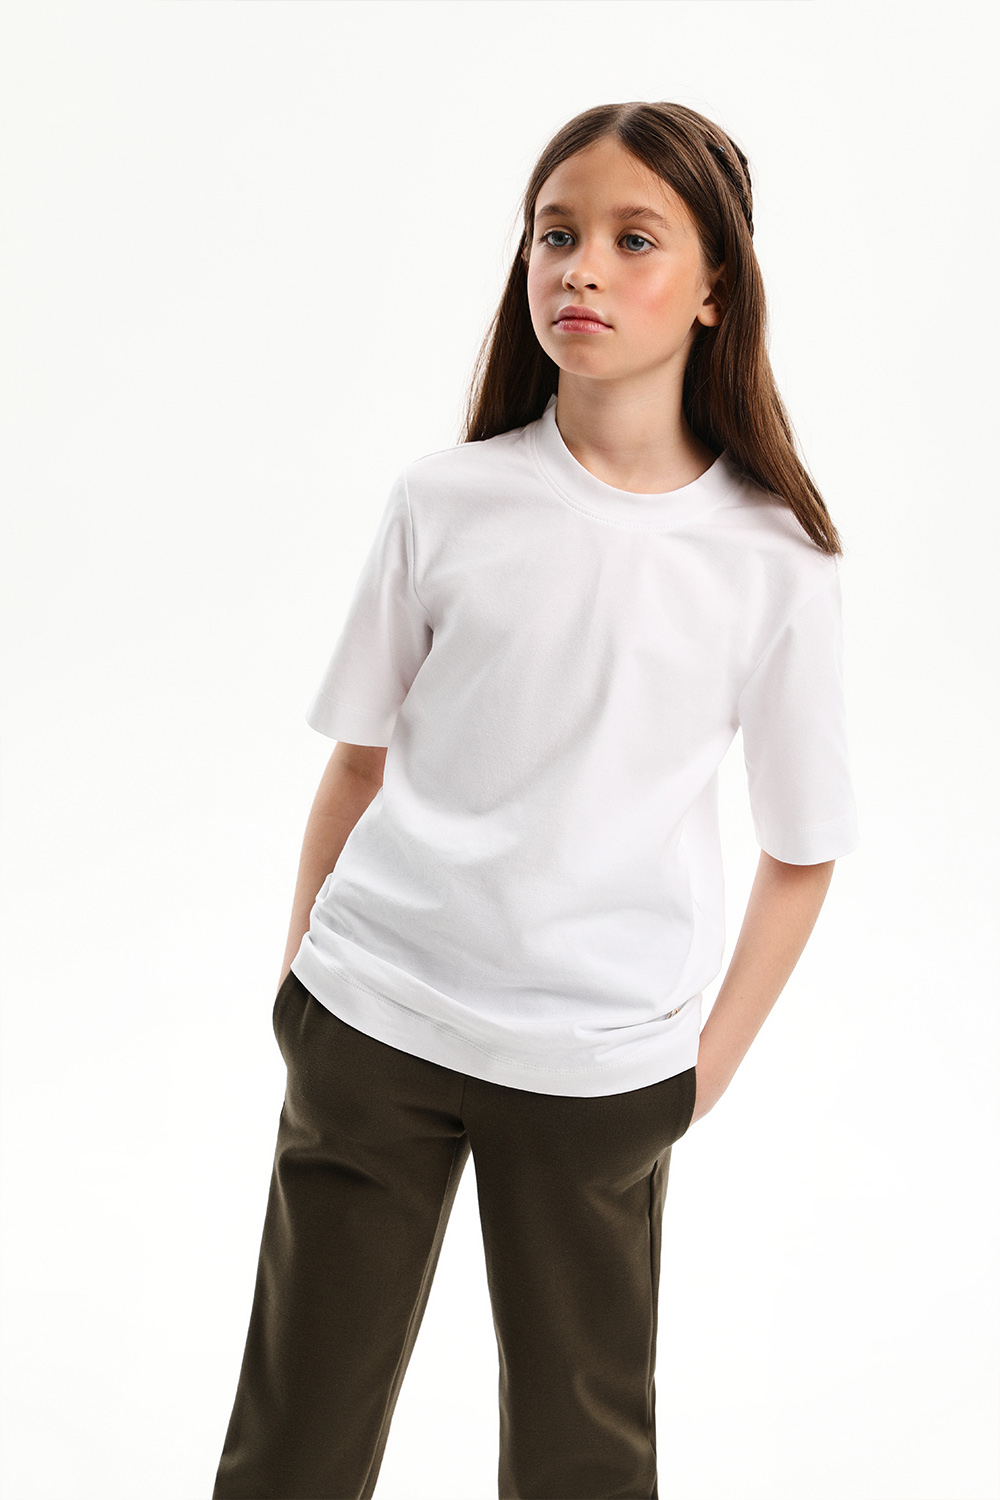 Хлопковая футболка с V-образным вырезом (SSLWG-328-22926-200) Silver spoon